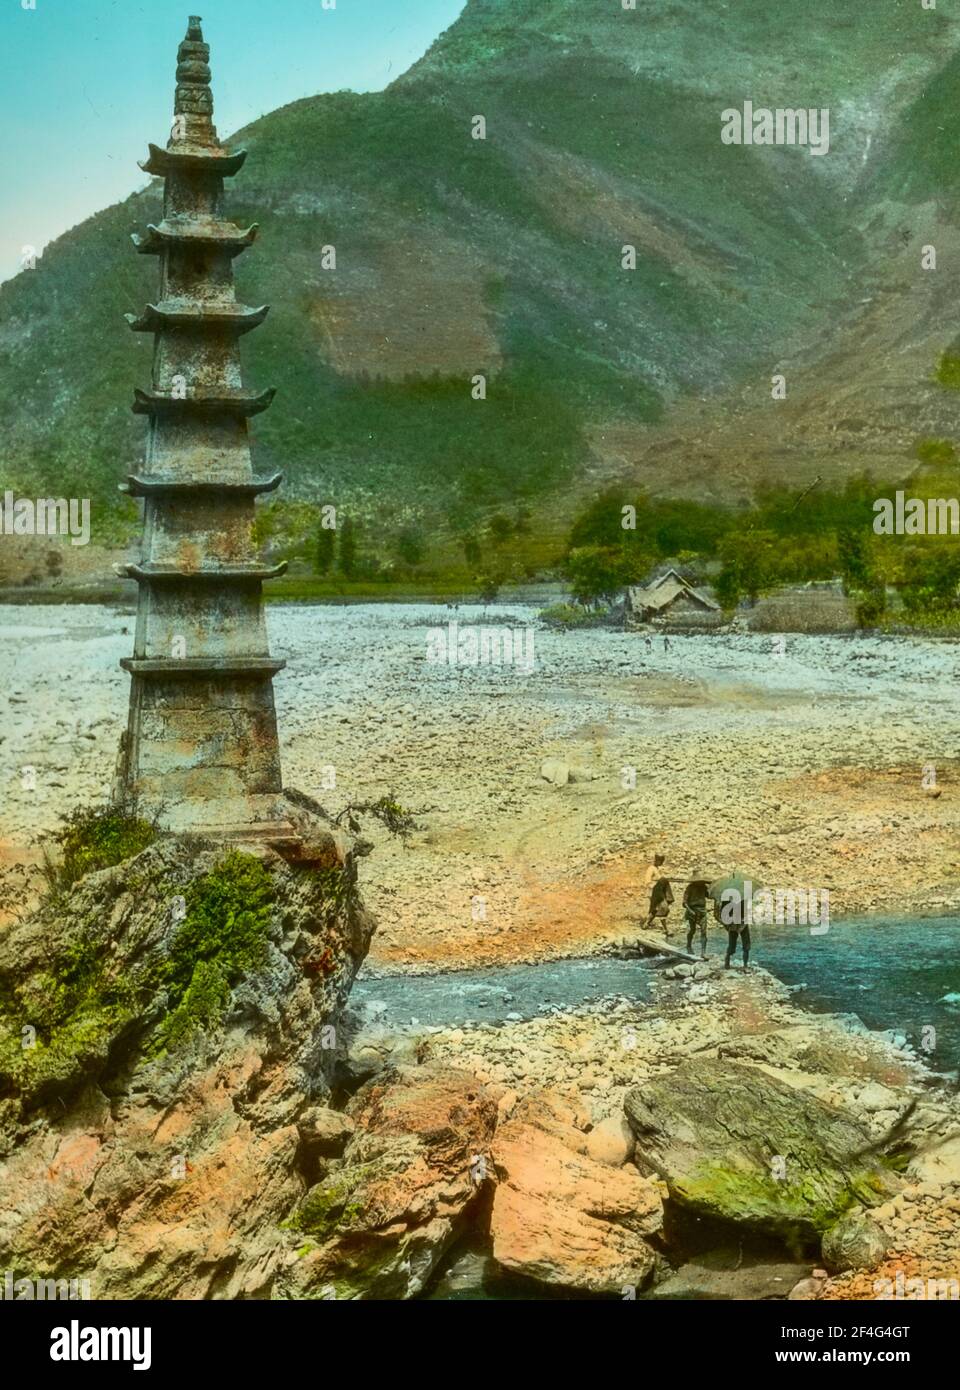 Drei Menschen überqueren an einem sonnigen Tag eine Plankenbrücke über einen teilweise trockenen Fluss, um eine kleine Pagode zu erreichen, die auf einem Felsvorsprung errichtet wurde, Sichuan, China, 1917. Aus der Sammlung Sidney D. Gamble Photographs. () Stockfoto